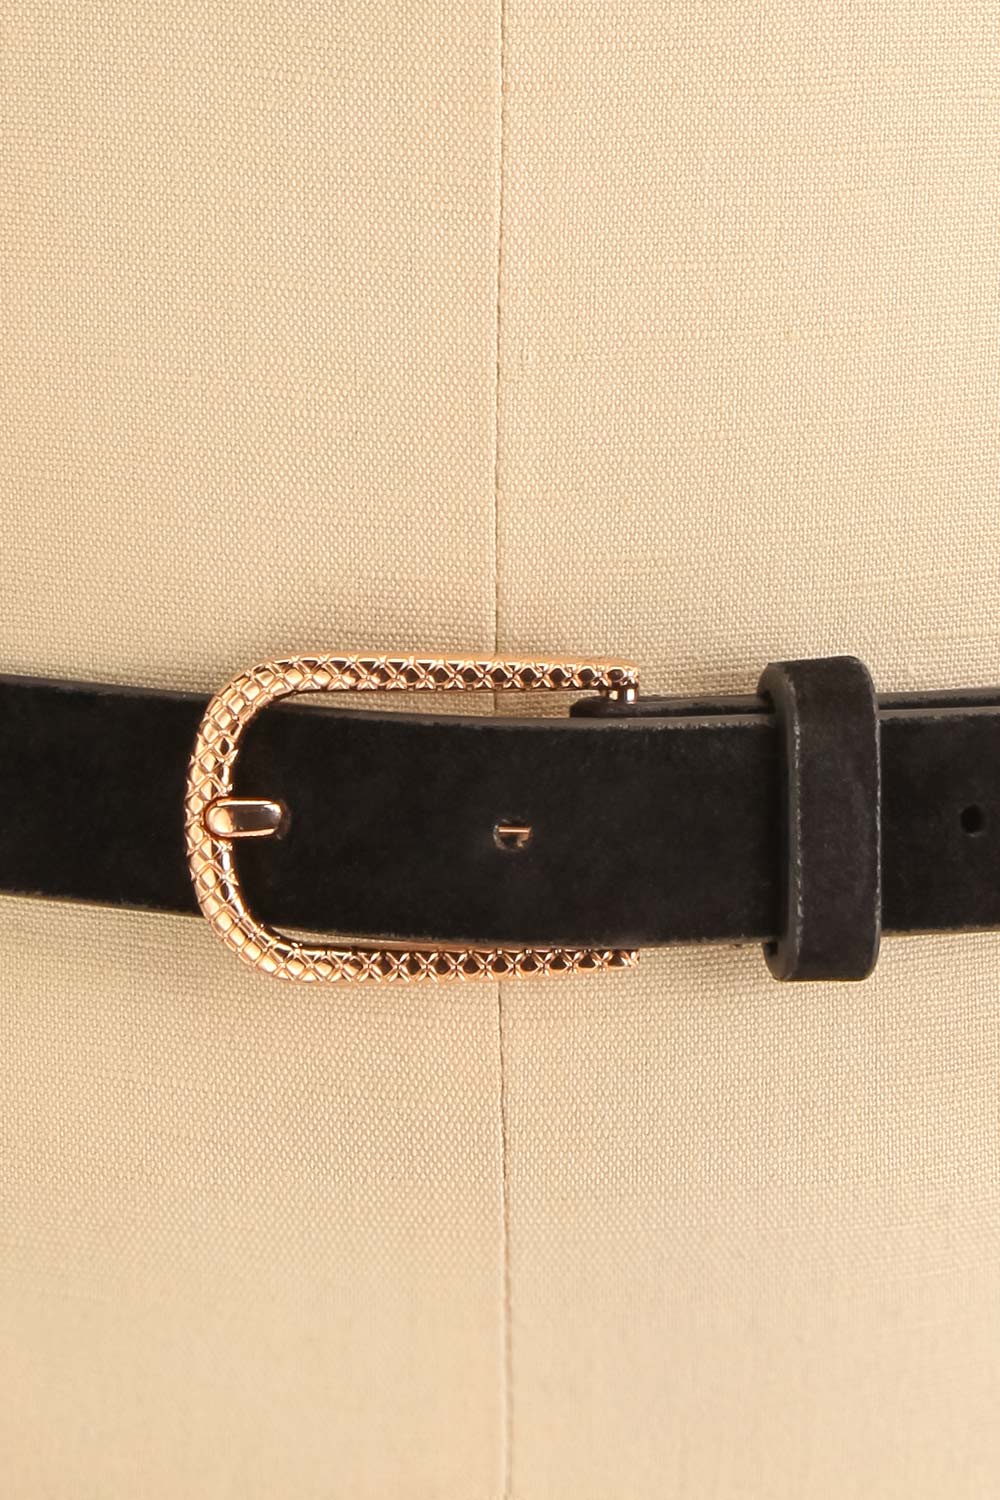 Abetir Black Faux Leather Belt w/ Gold Buckle | La petite garçonne close-up